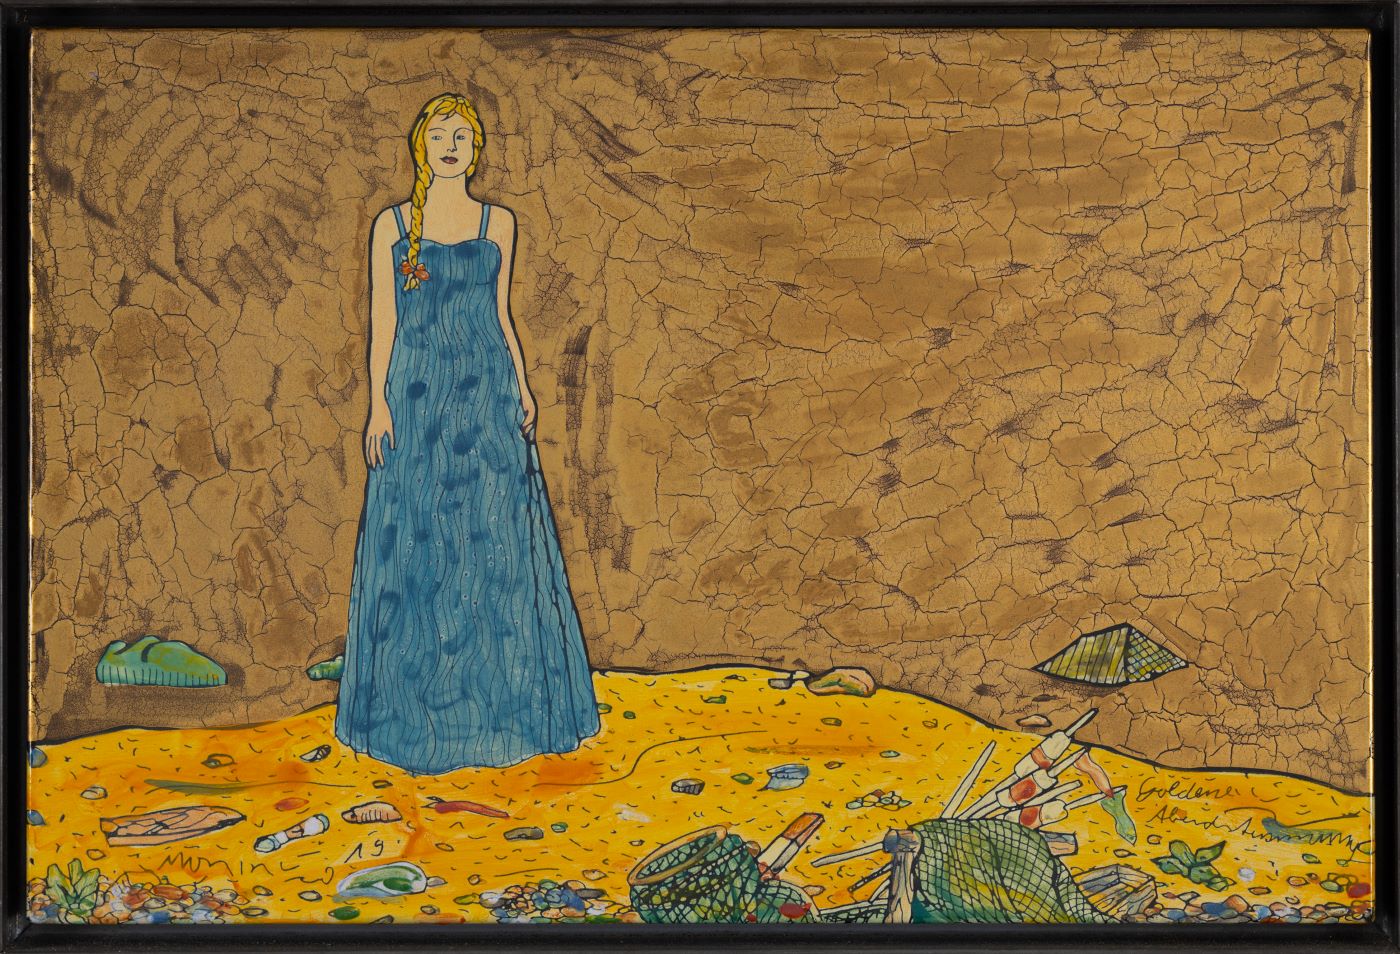 Moritz Götze, Goldene Abendstimmung, 2019, Eamillemalerei, 40 cm x 60 cm, Preis auf Anfrage, Galerie Cyprian Brenner